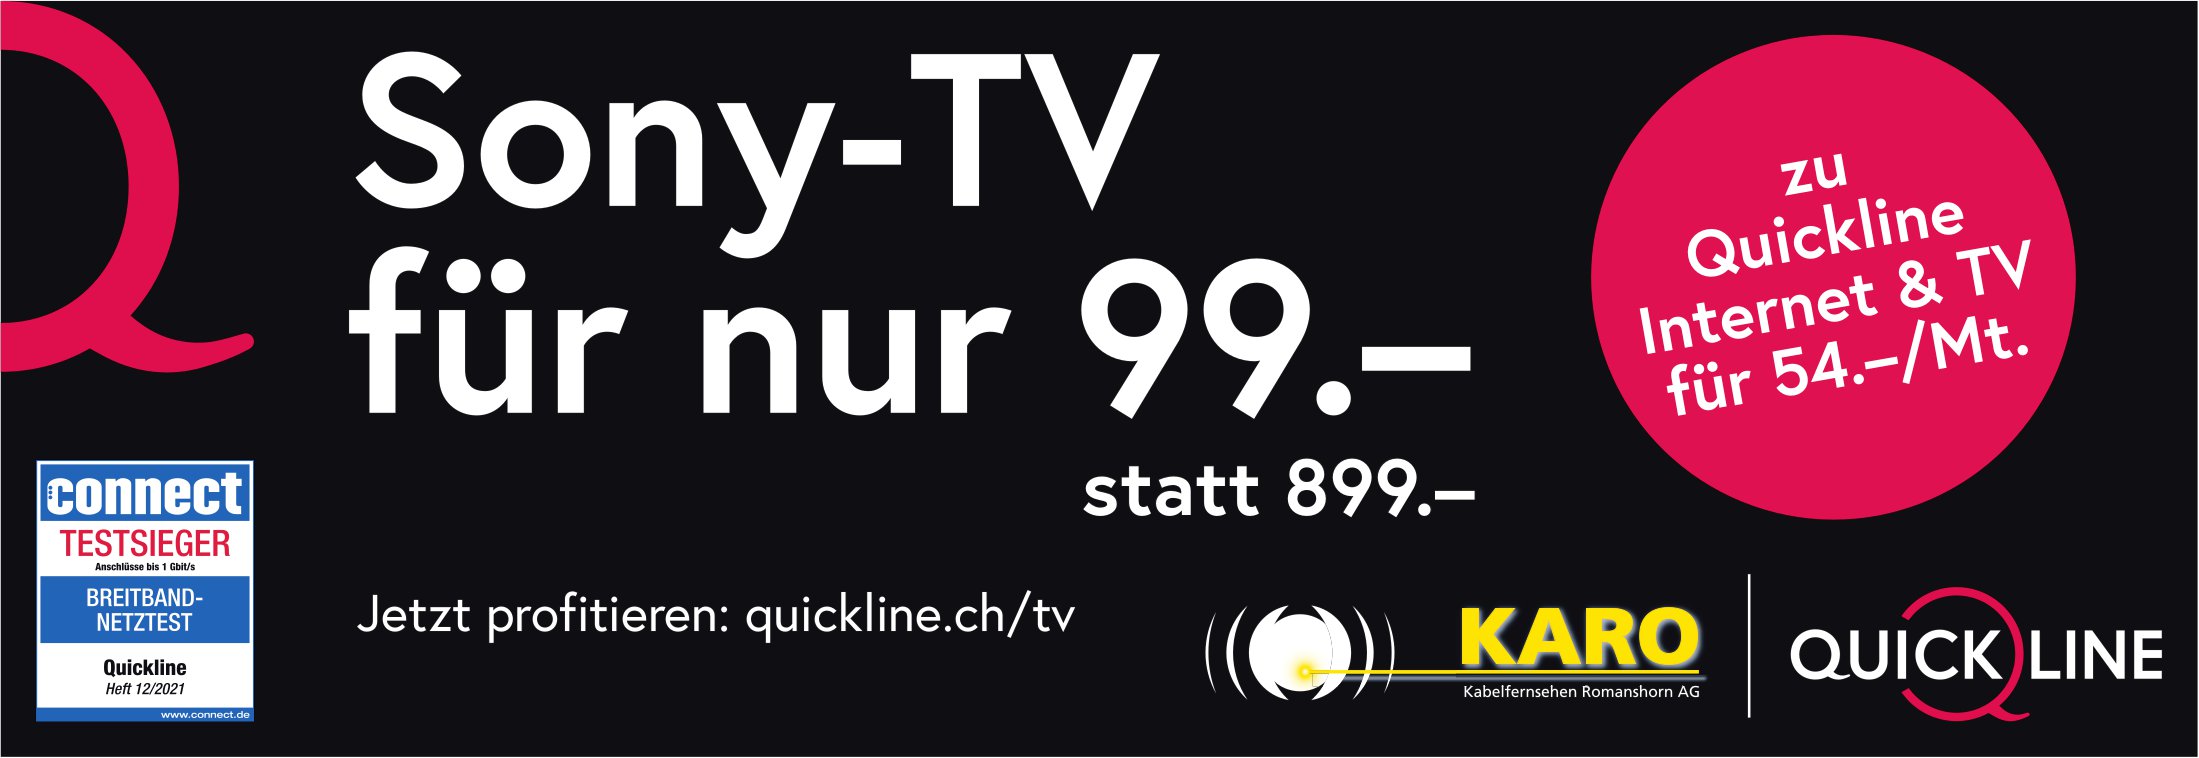 QUICKLINE, Sony-TV für nur 99.-, statt 899.-